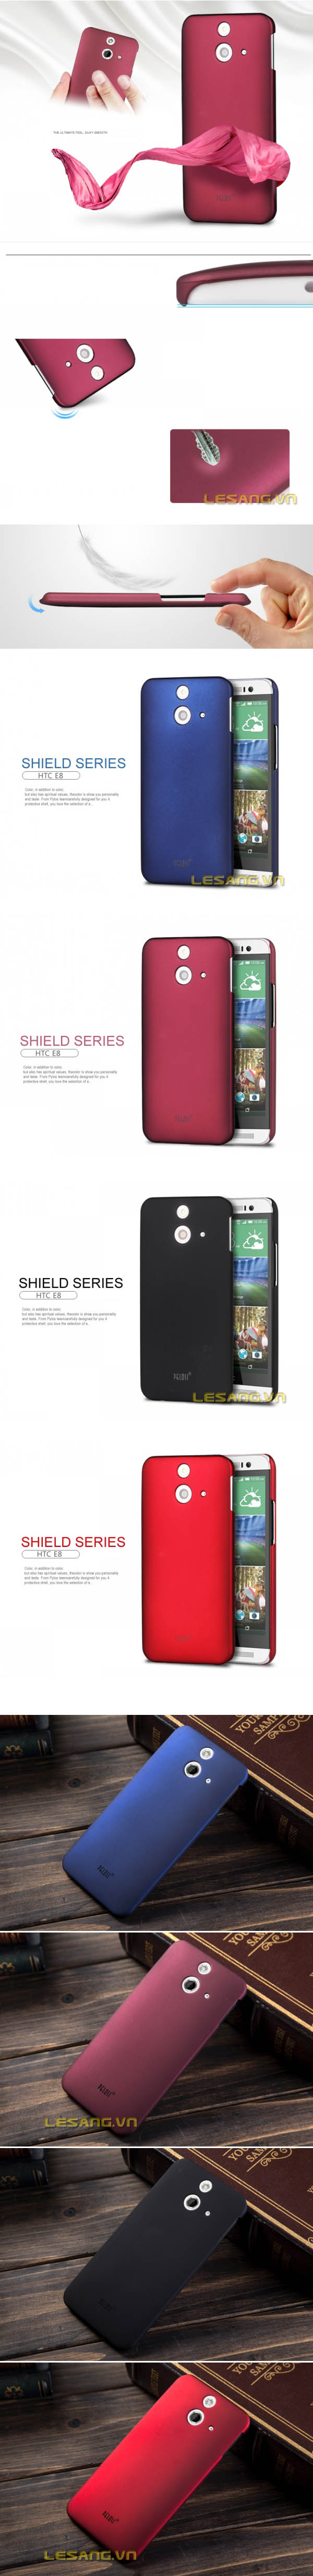 Ốp lưng HTC One E8 Pelosi Case 33223